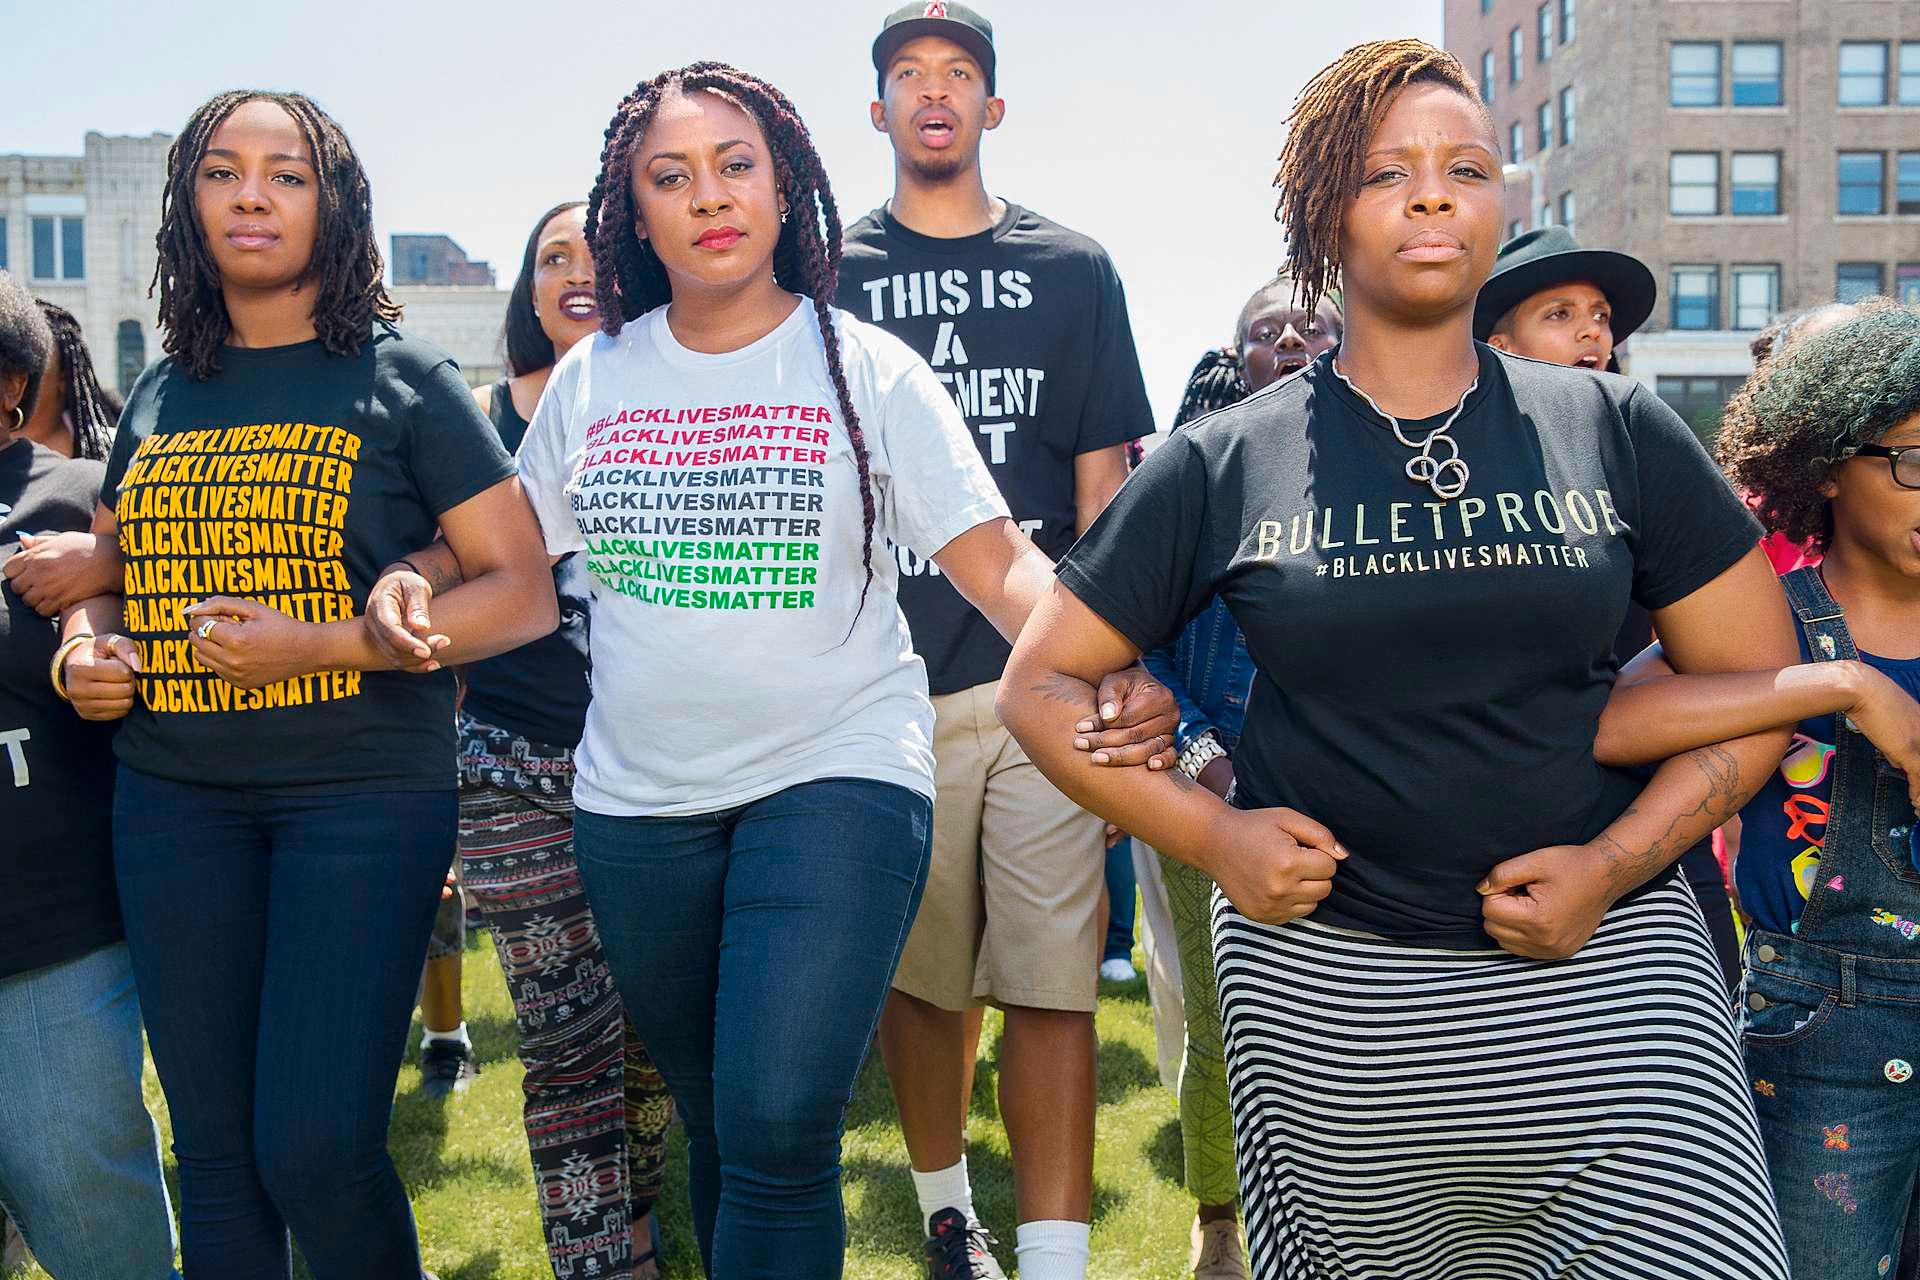 Grunnleggerne av Black Lives Matter, Alicia Garza, Patrisse Cullors og Opal Tometi, under en demonstrasjon i Cleveland i 2015.